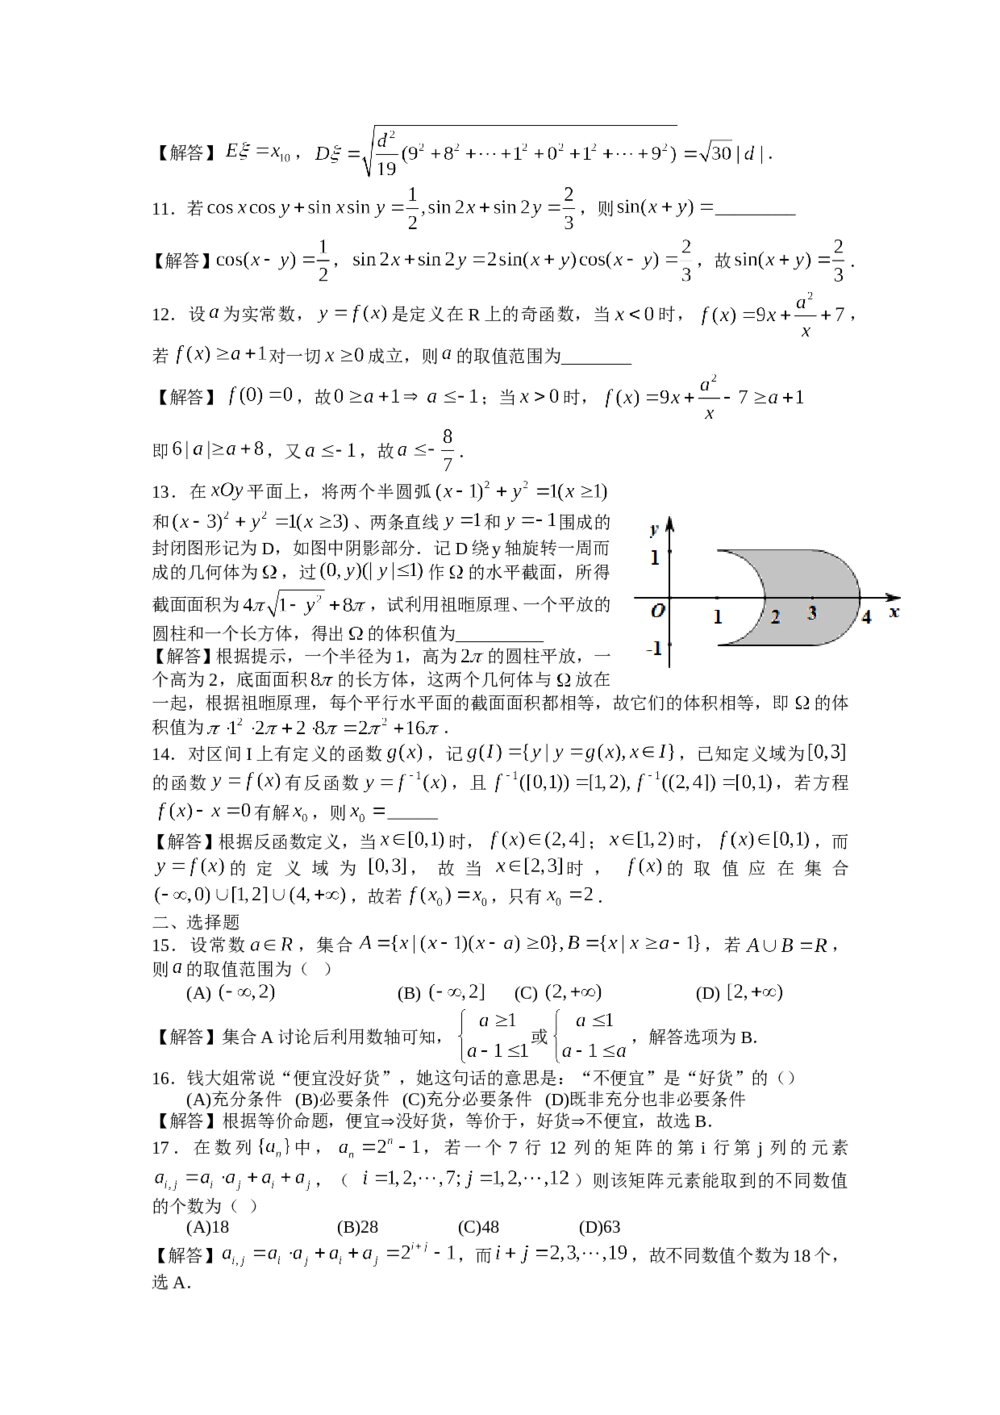 2013年上海高考数学(理科)真题试卷word版+答案解析9